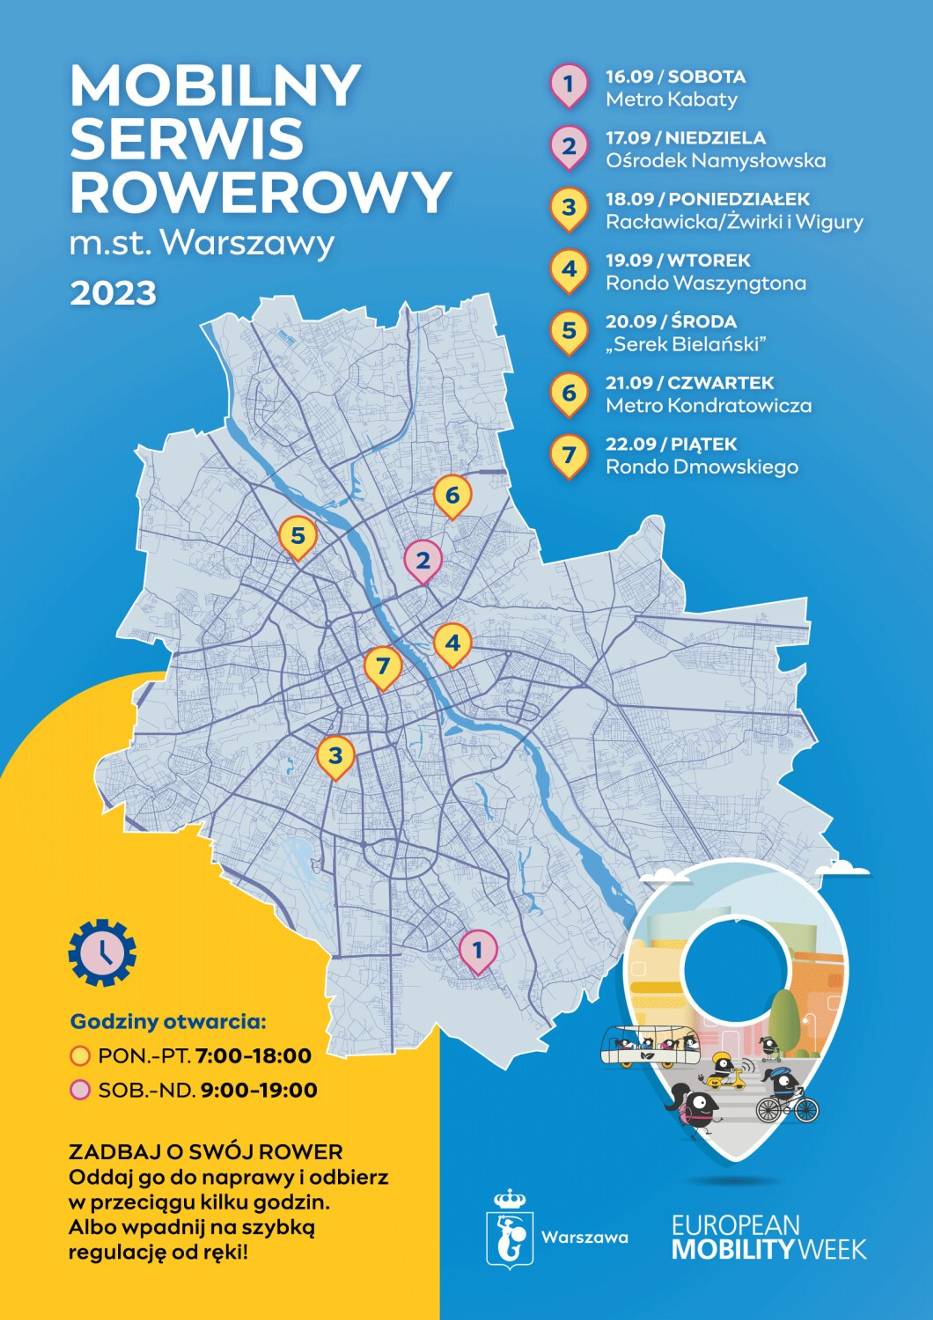 Warszawa organizuje Bezpłatny Serwis Rowerowy - w 7 dzielnicach przez 7 dni będą czekać specjaliści od napraw jednośladów